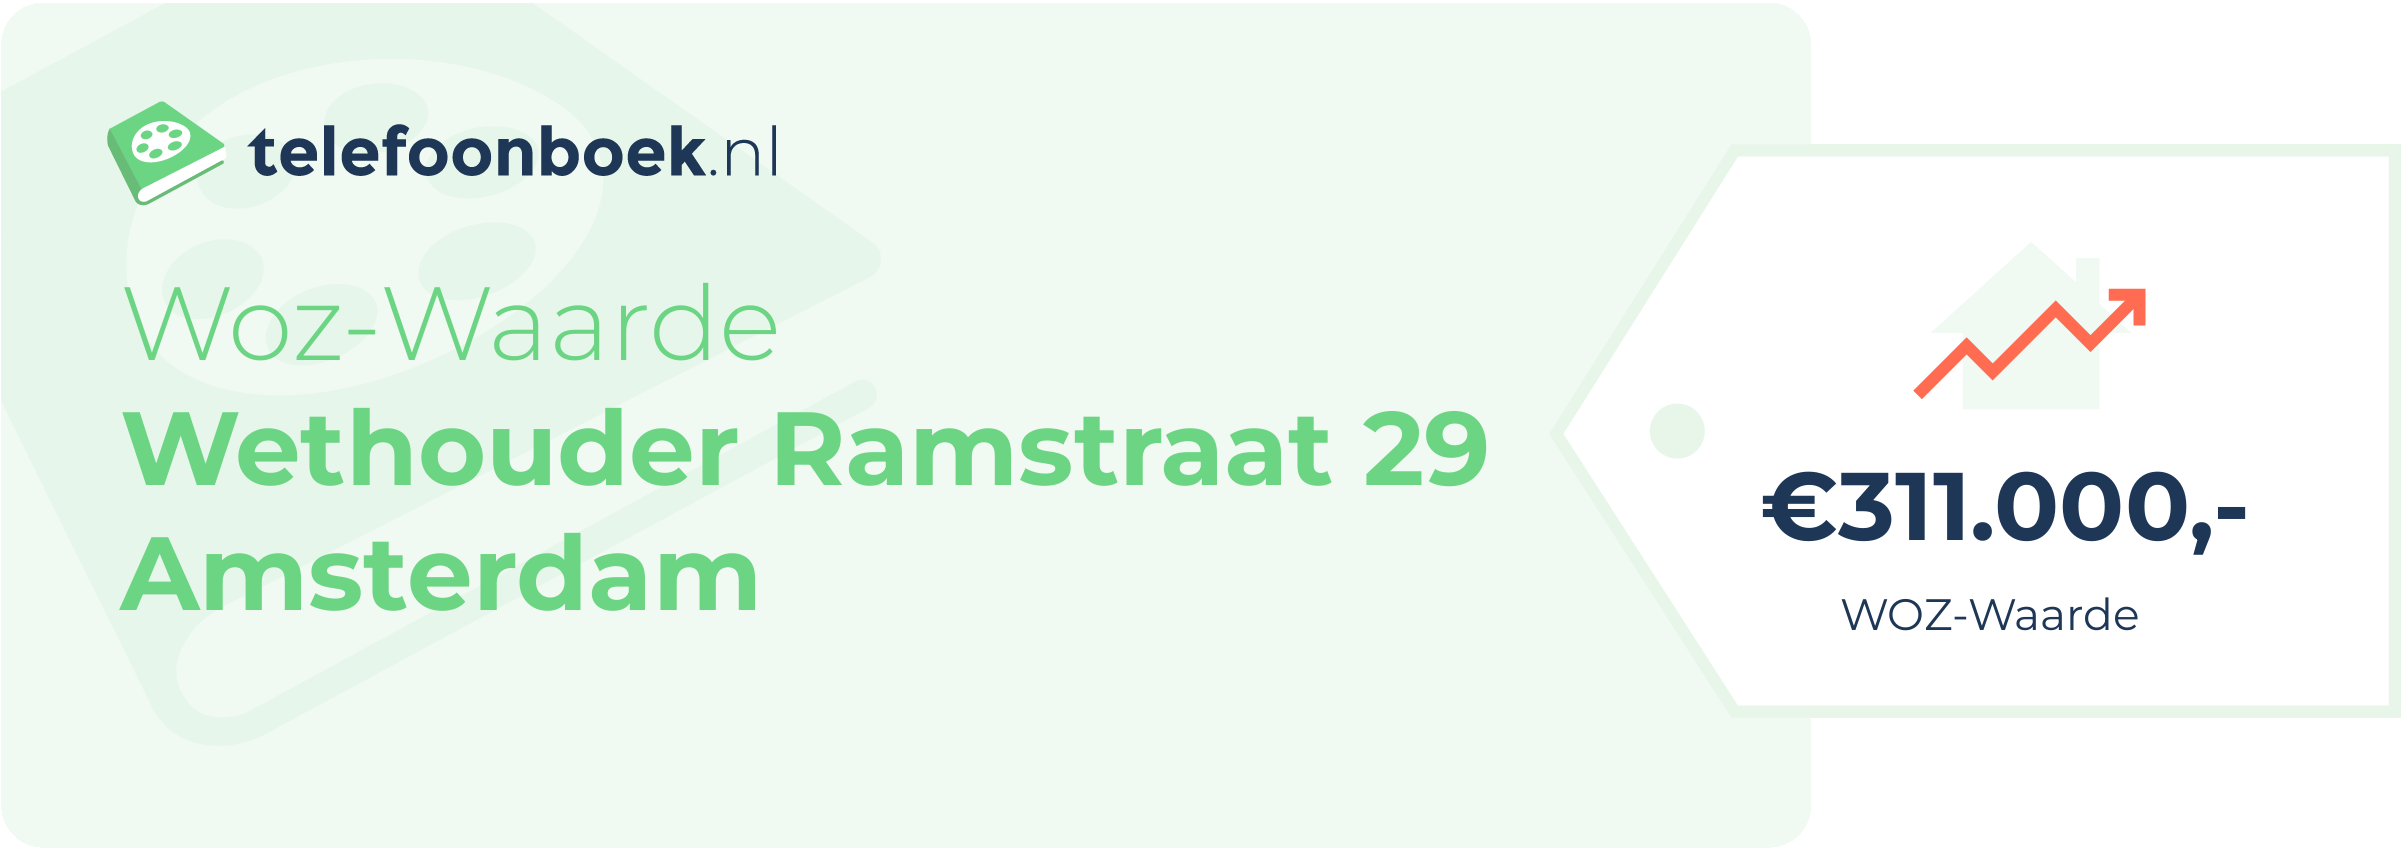 WOZ-waarde Wethouder Ramstraat 29 Amsterdam